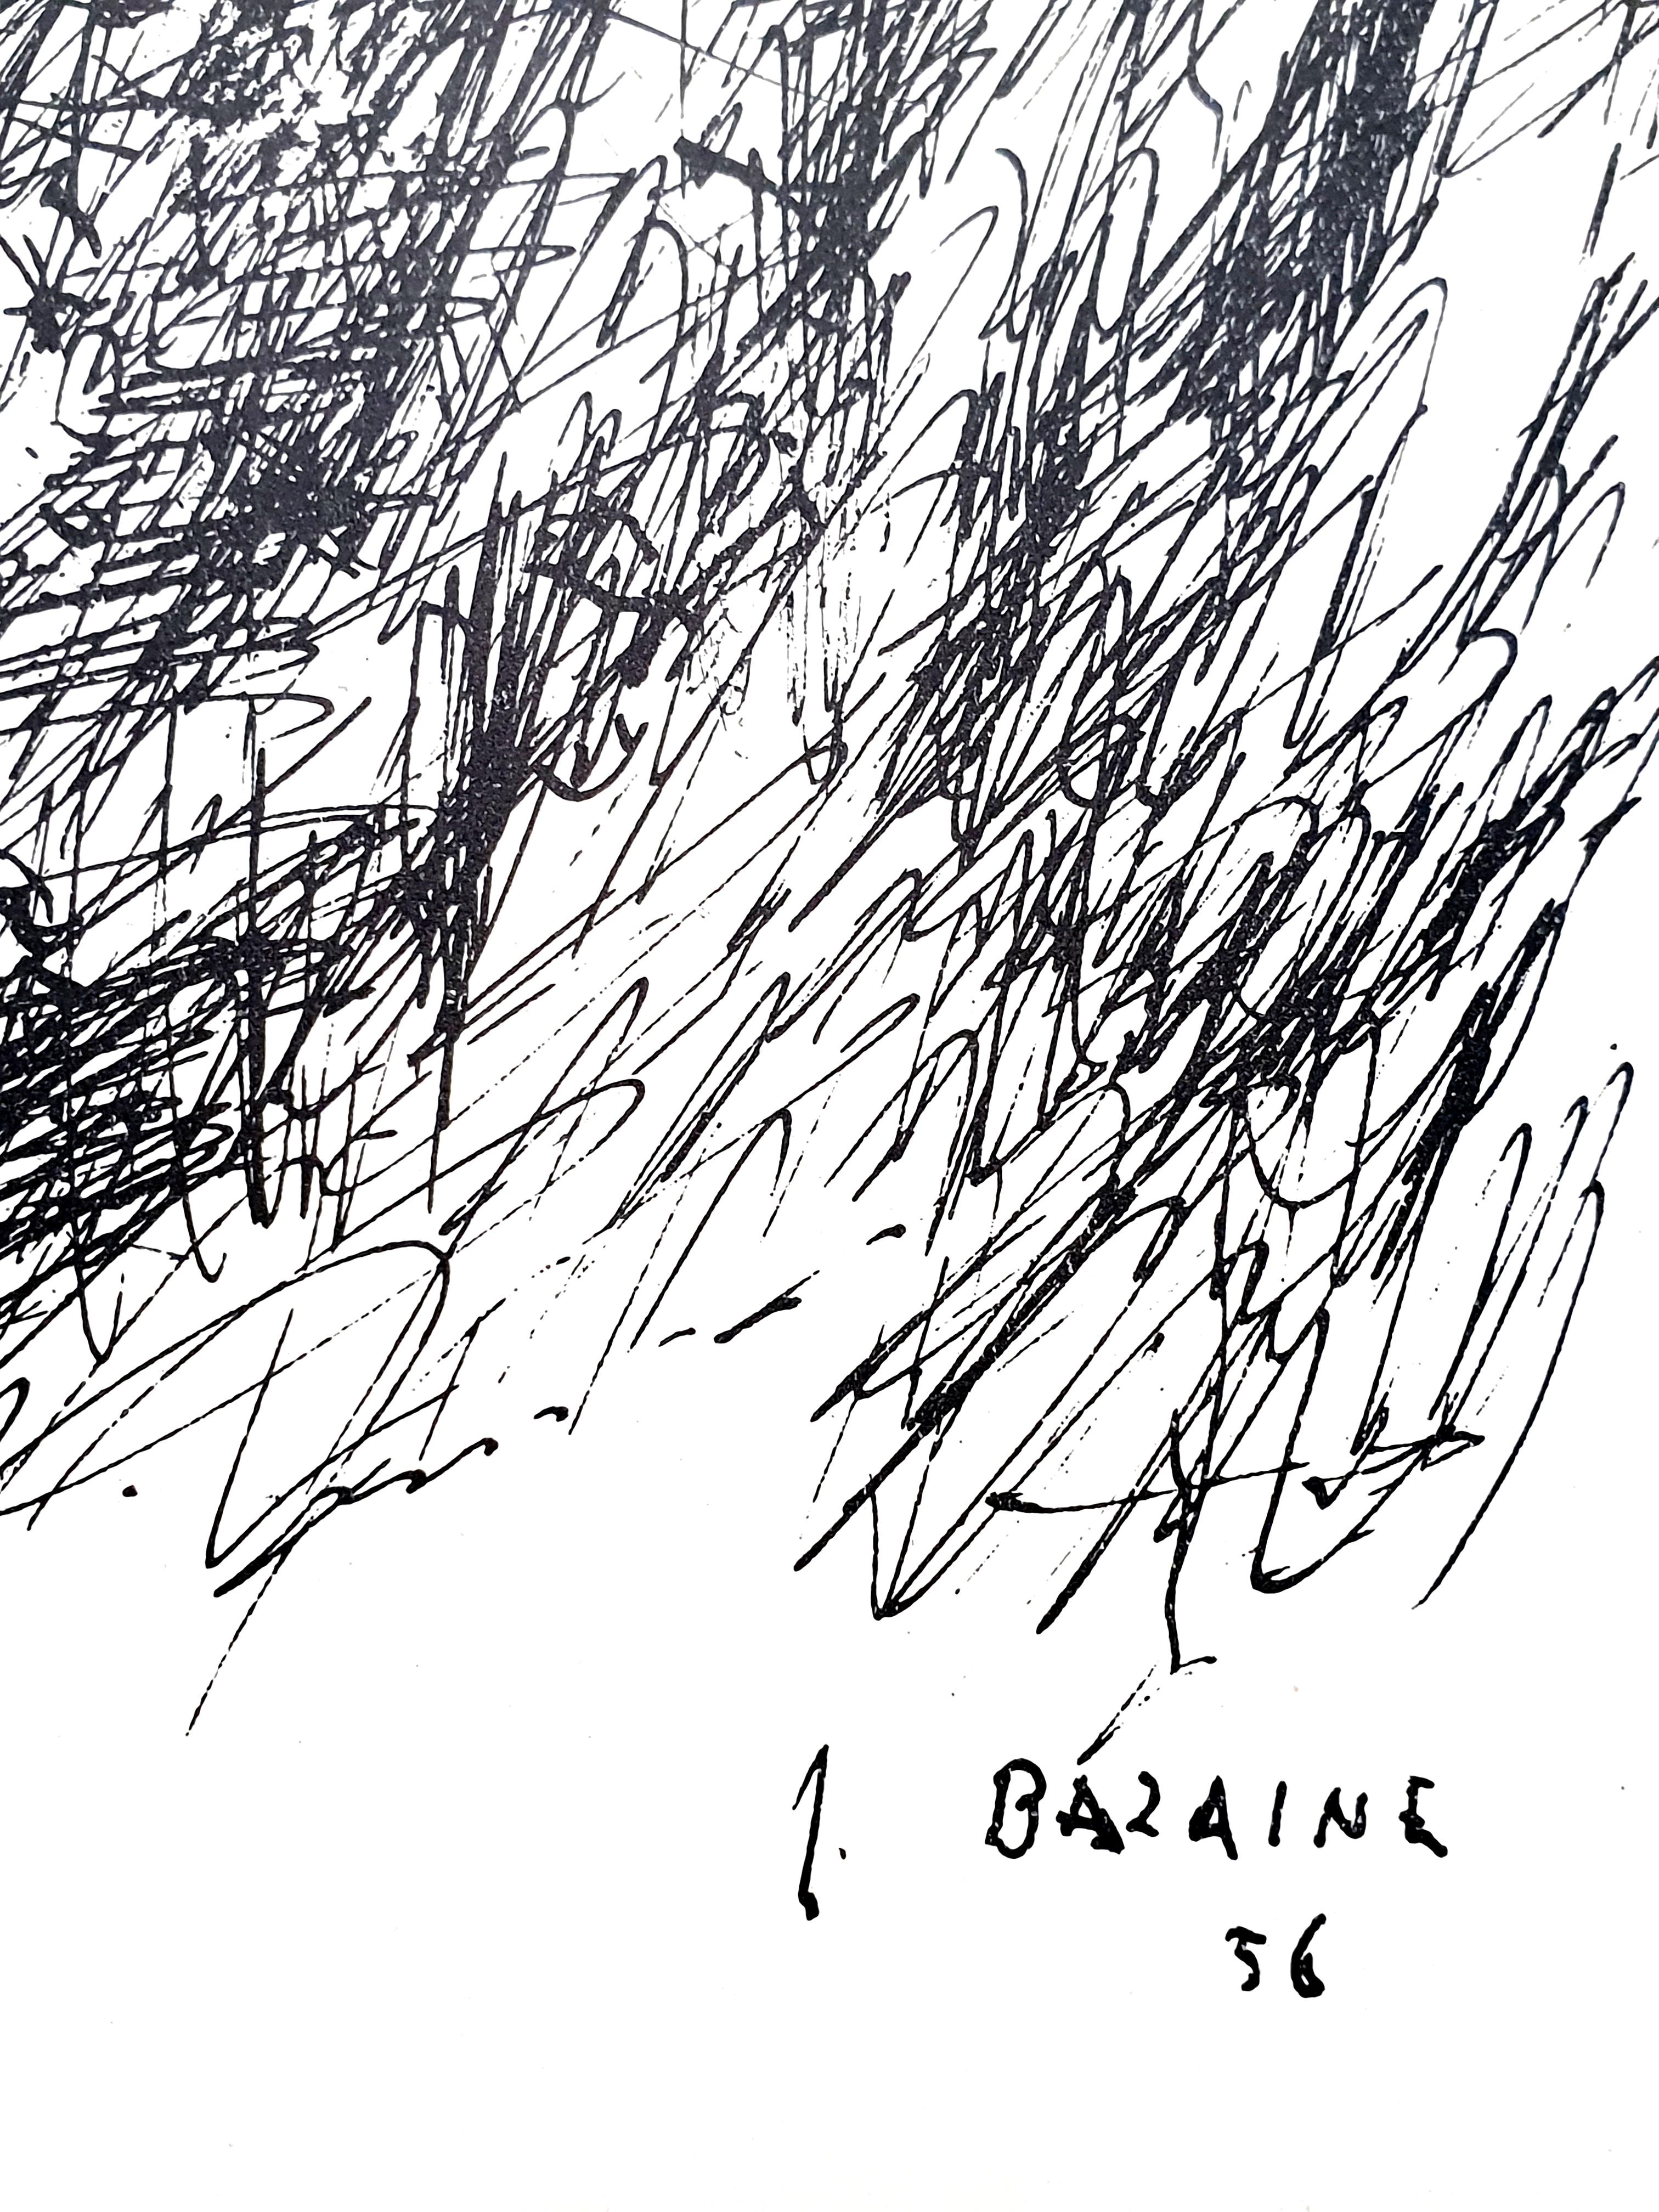 Jean Bazaine -  Original Lithograph
1956
Dimensions: 38 x 28 cm
Revue DLM 10 ans d'éditions
Edition: Maeght